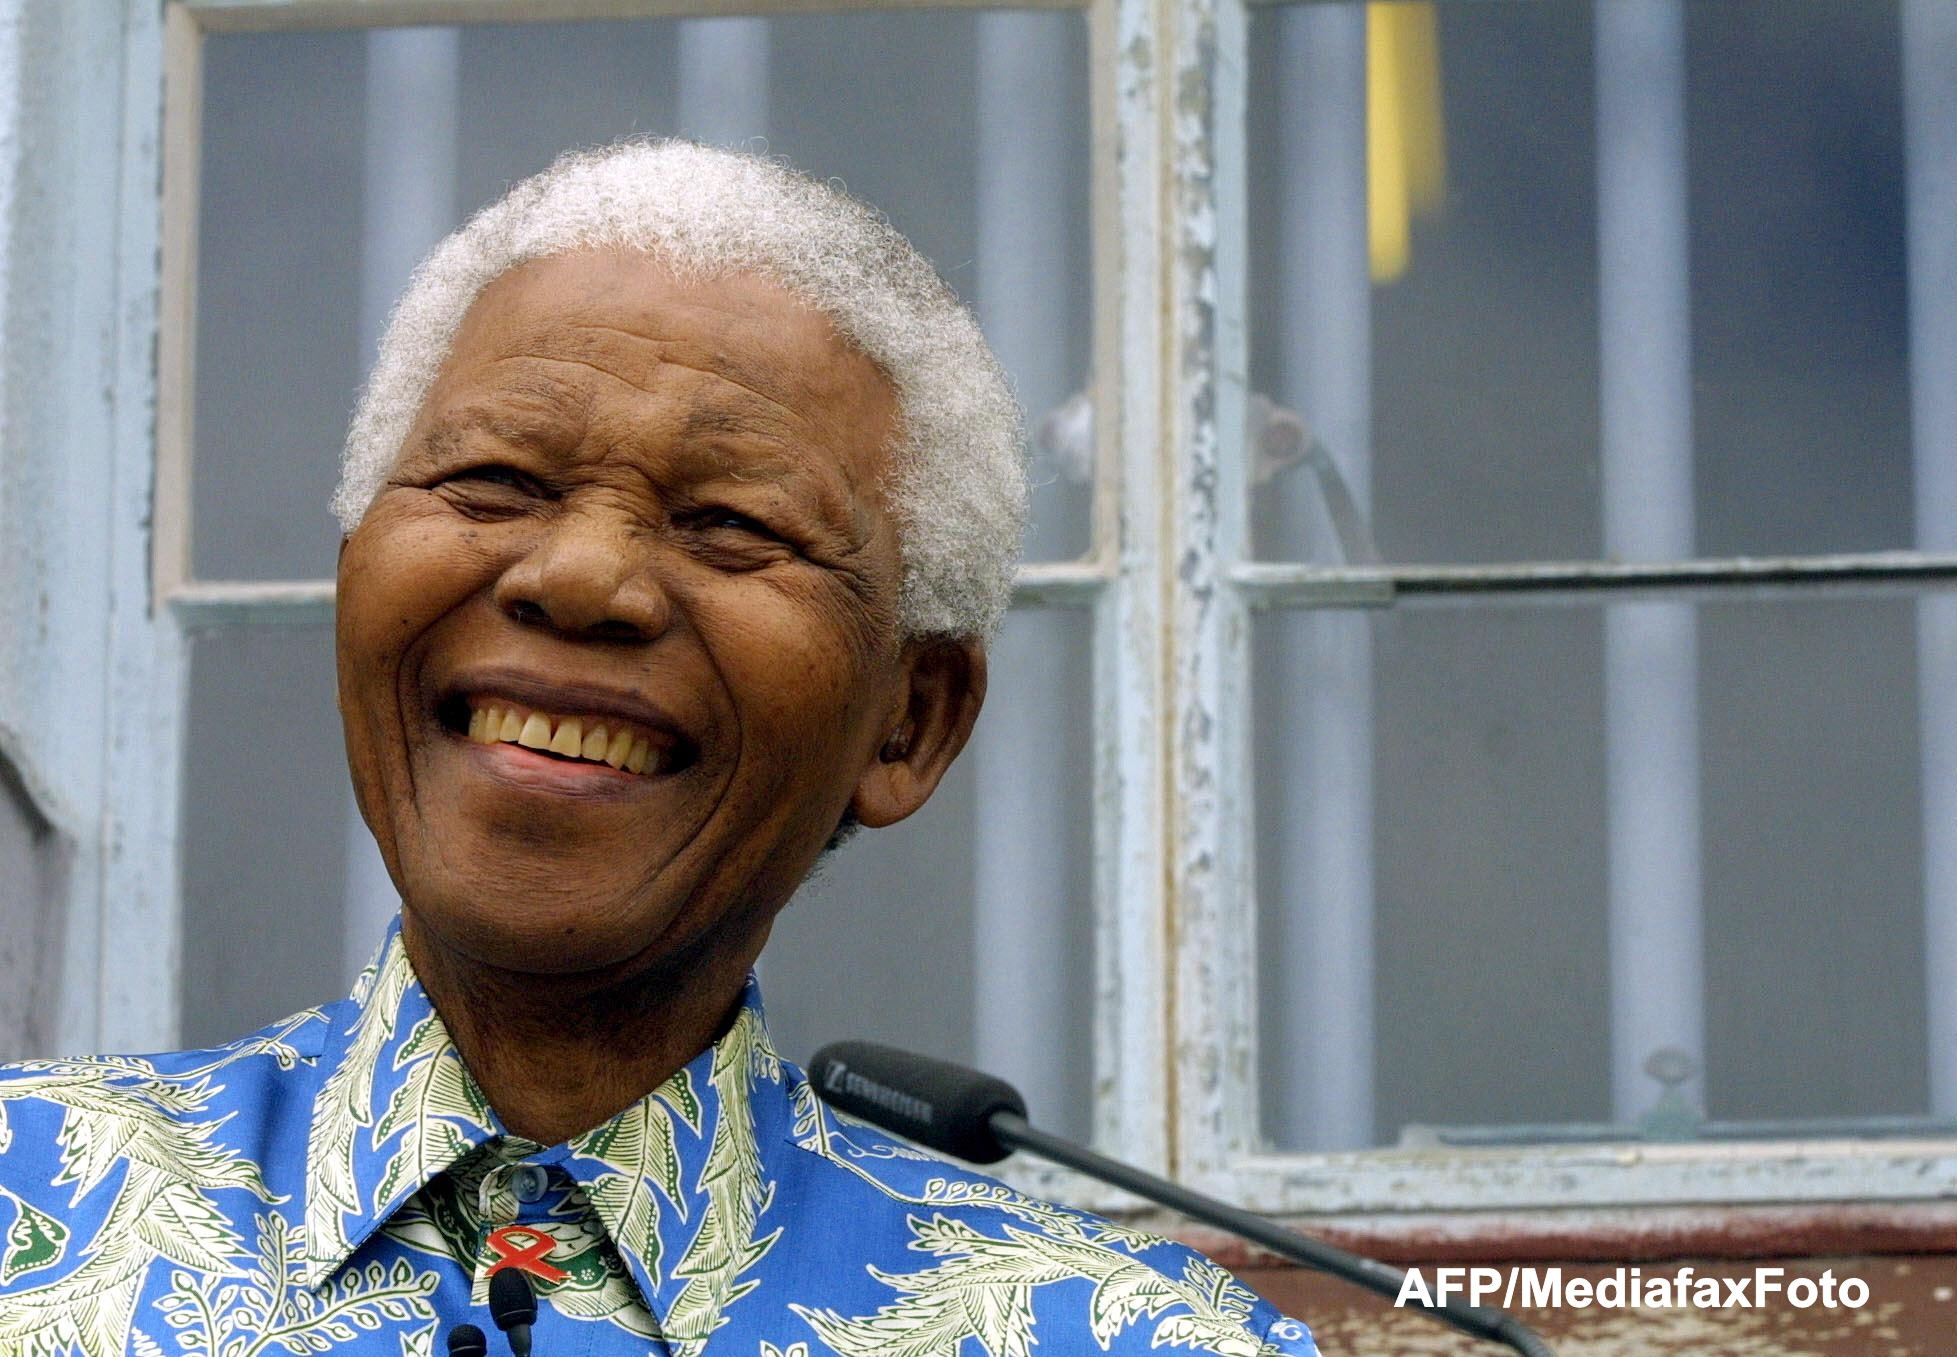 Starea de sanatate a lui Nelson Mandela este buna, dar are probleme cu memoria